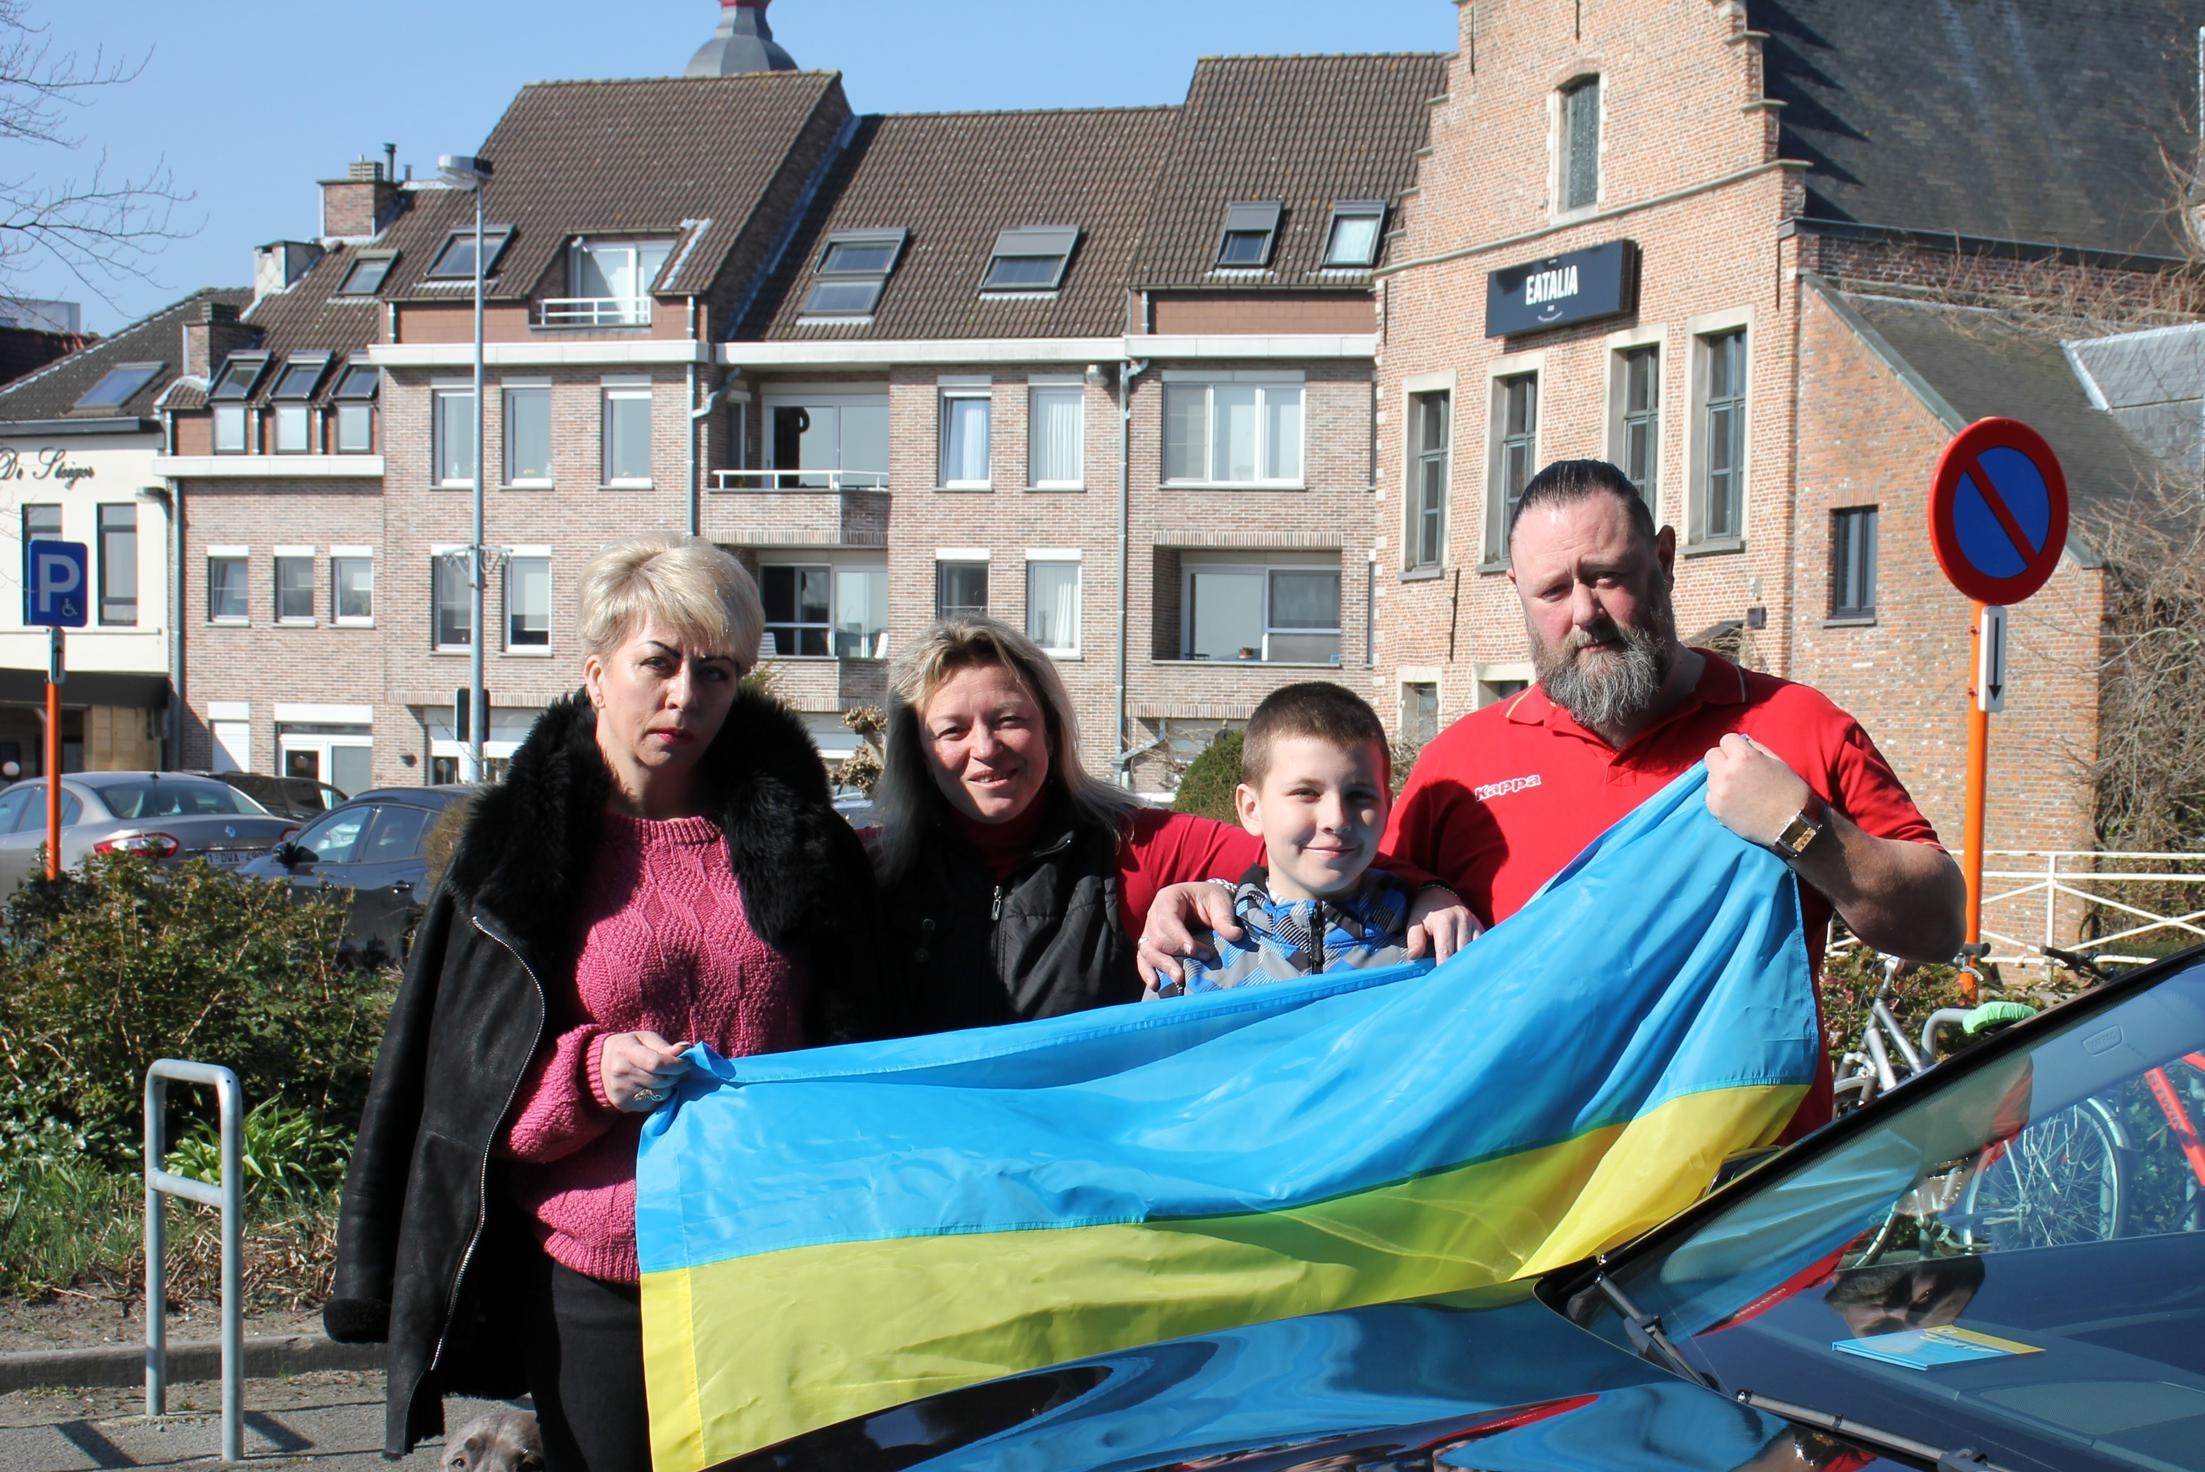 Cafébaas rijdt naar Polen en terug om Oekraïense vrienden op te halen “Hun huis is platgebombardeerd” (Temse) Gazet van Antwerpen Mobile foto